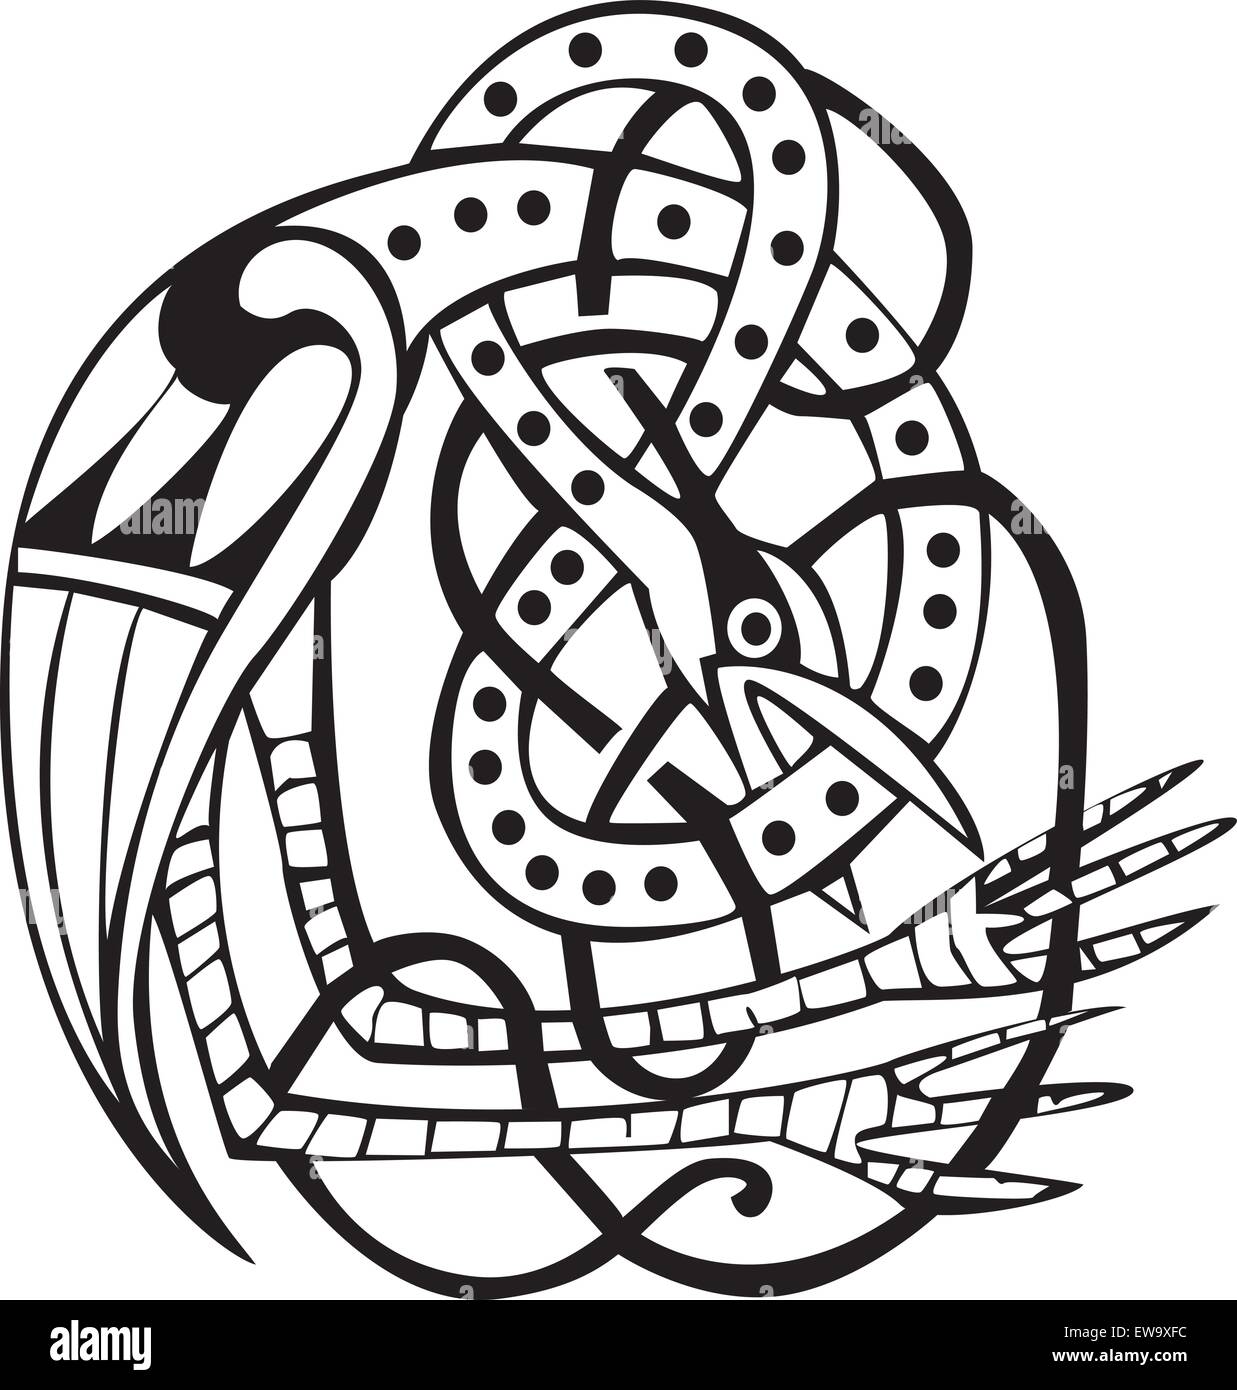 Keltisches Design eines Vogels beißen seinen eigenen Hals mit verknoteten Linien und Muster. Ideal für Kunstwerke oder Tätowierung Stock Vektor